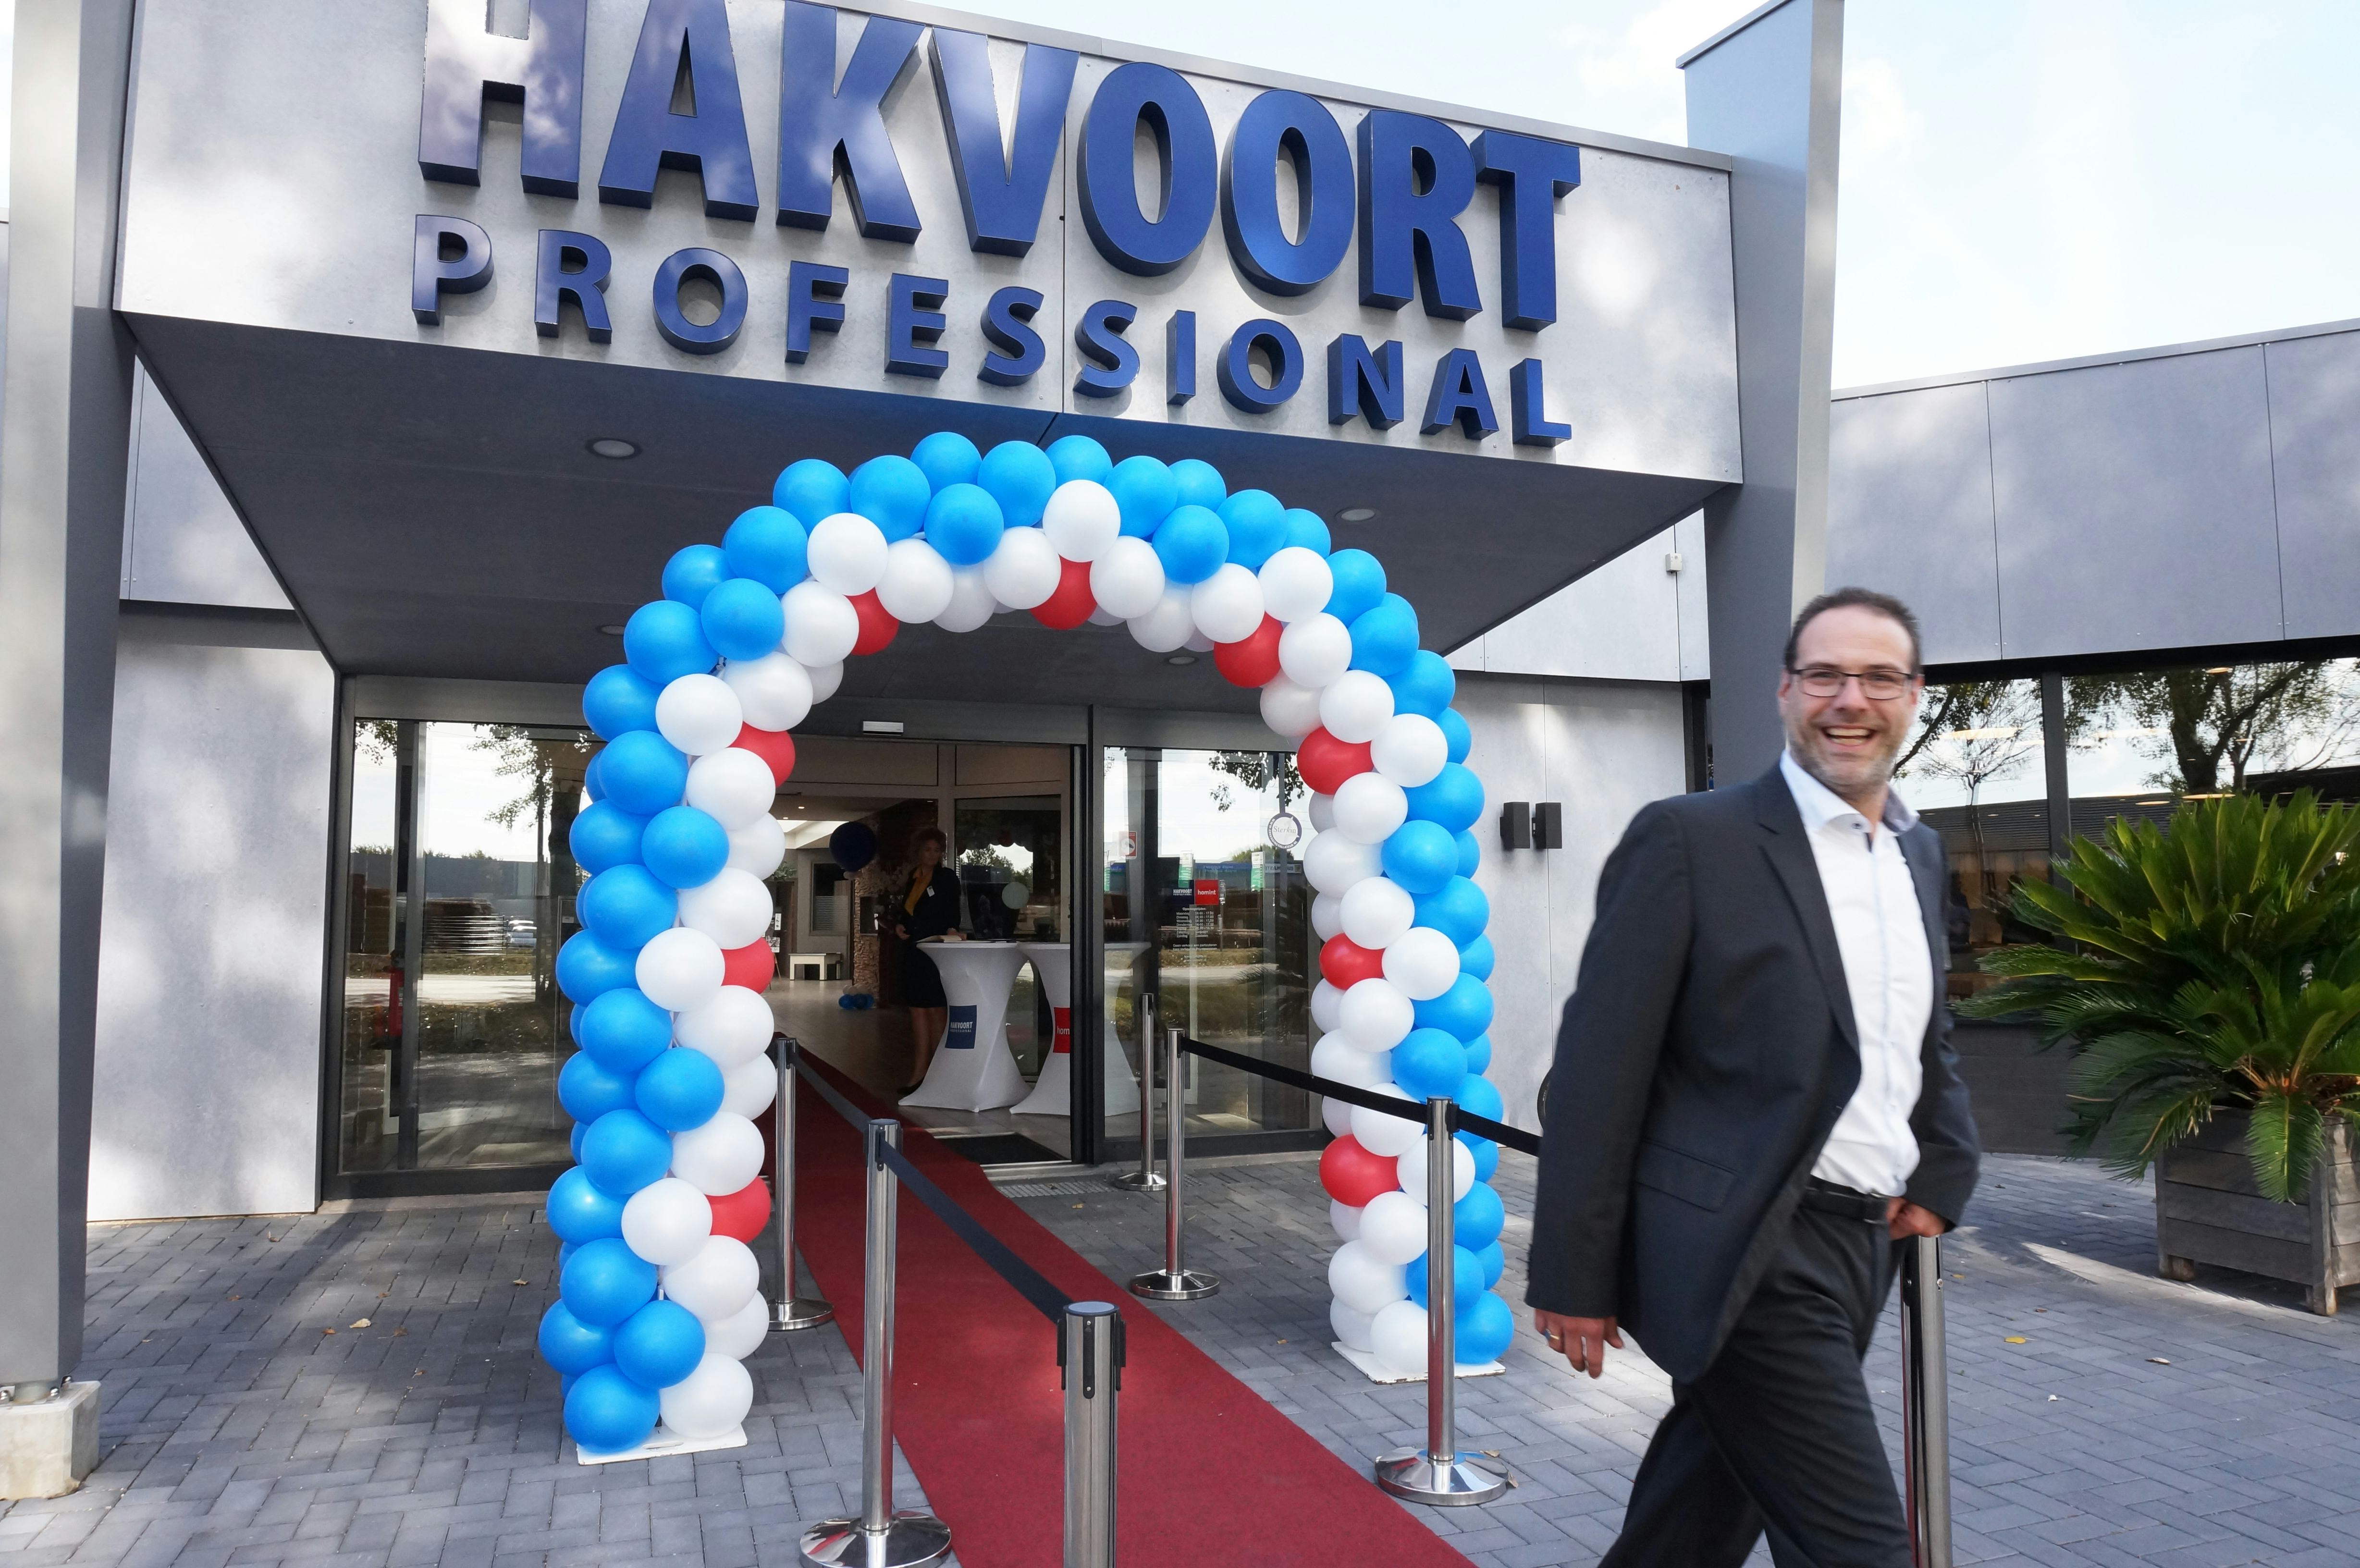 Experience Center Hakvoort Professional en Homint opent in Venlo